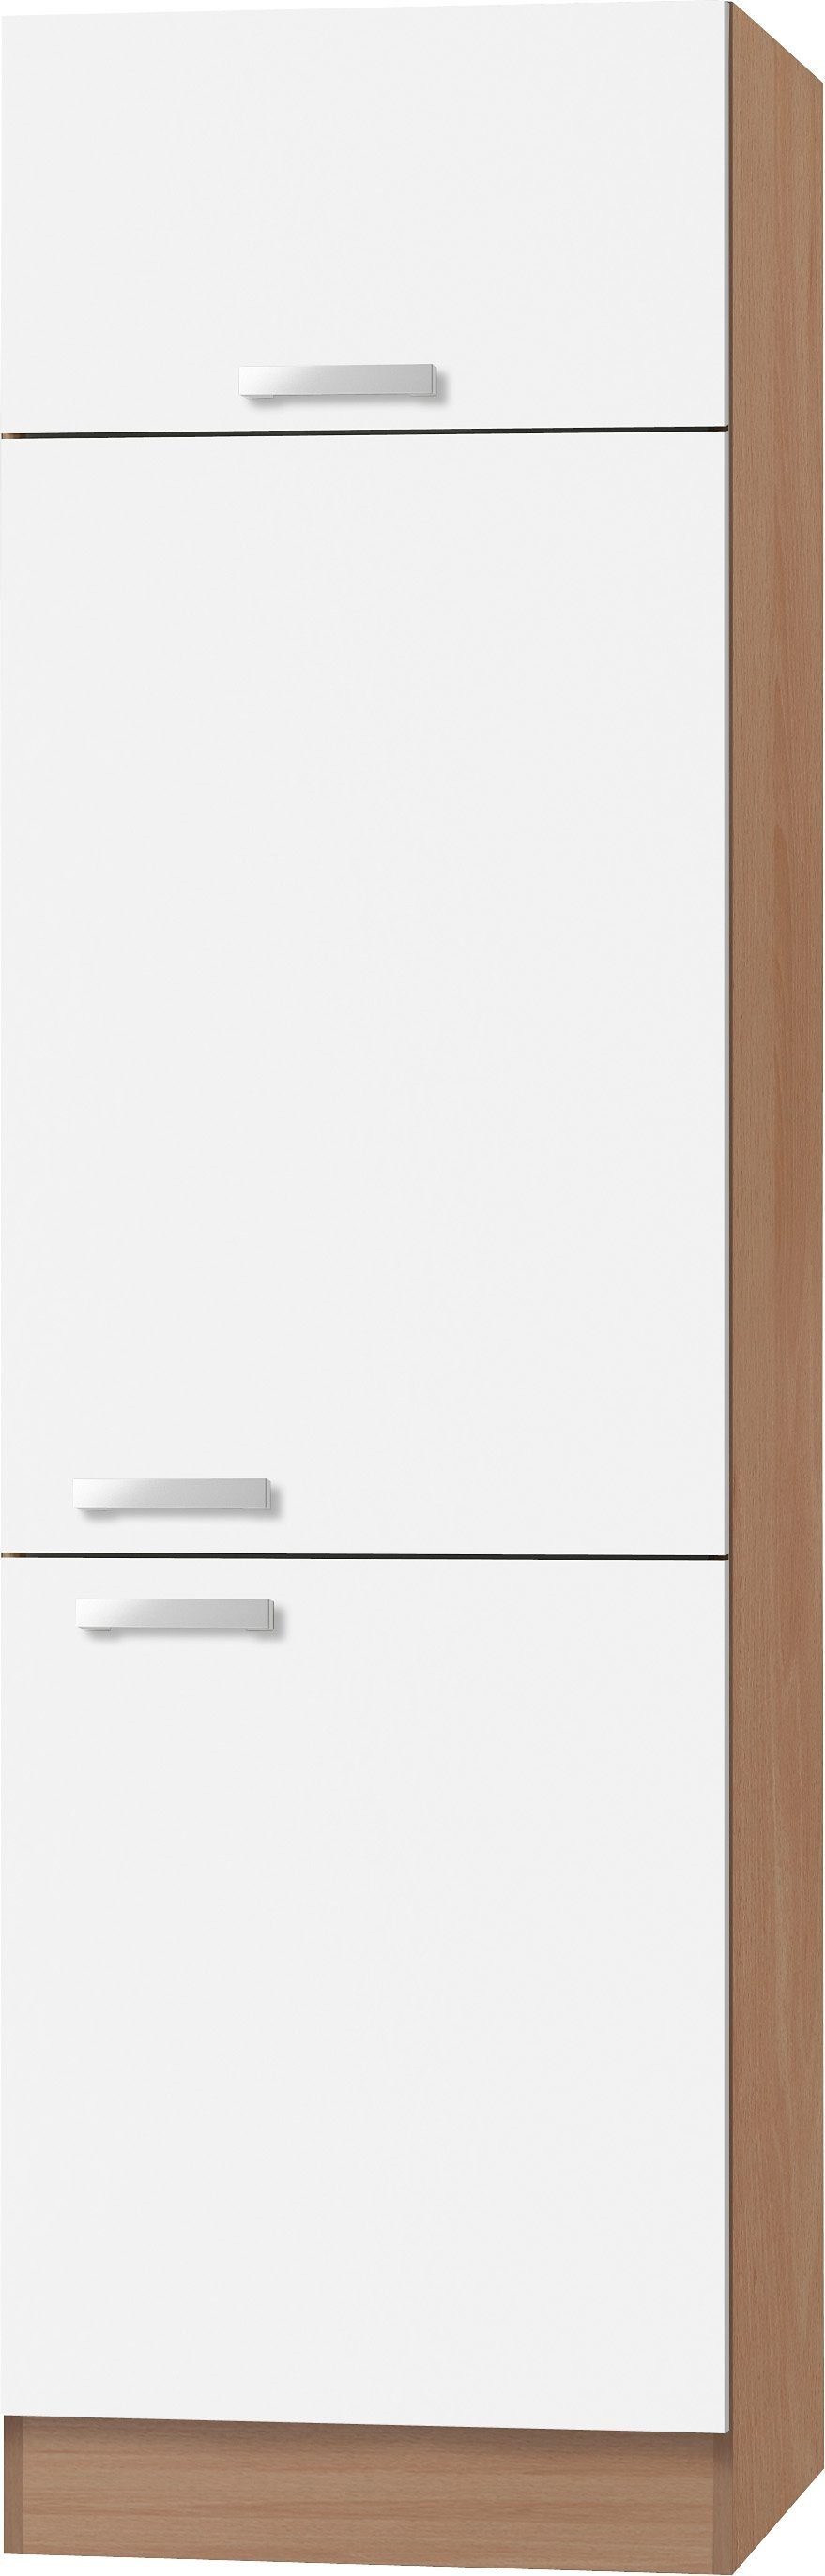 OPTIFIT Kühlumbauschrank Odense 60 cm breit, 207 cm hoch, geeignet für Einbaukühlschrank mit maß 88 cm weiß/buche | buchefarben